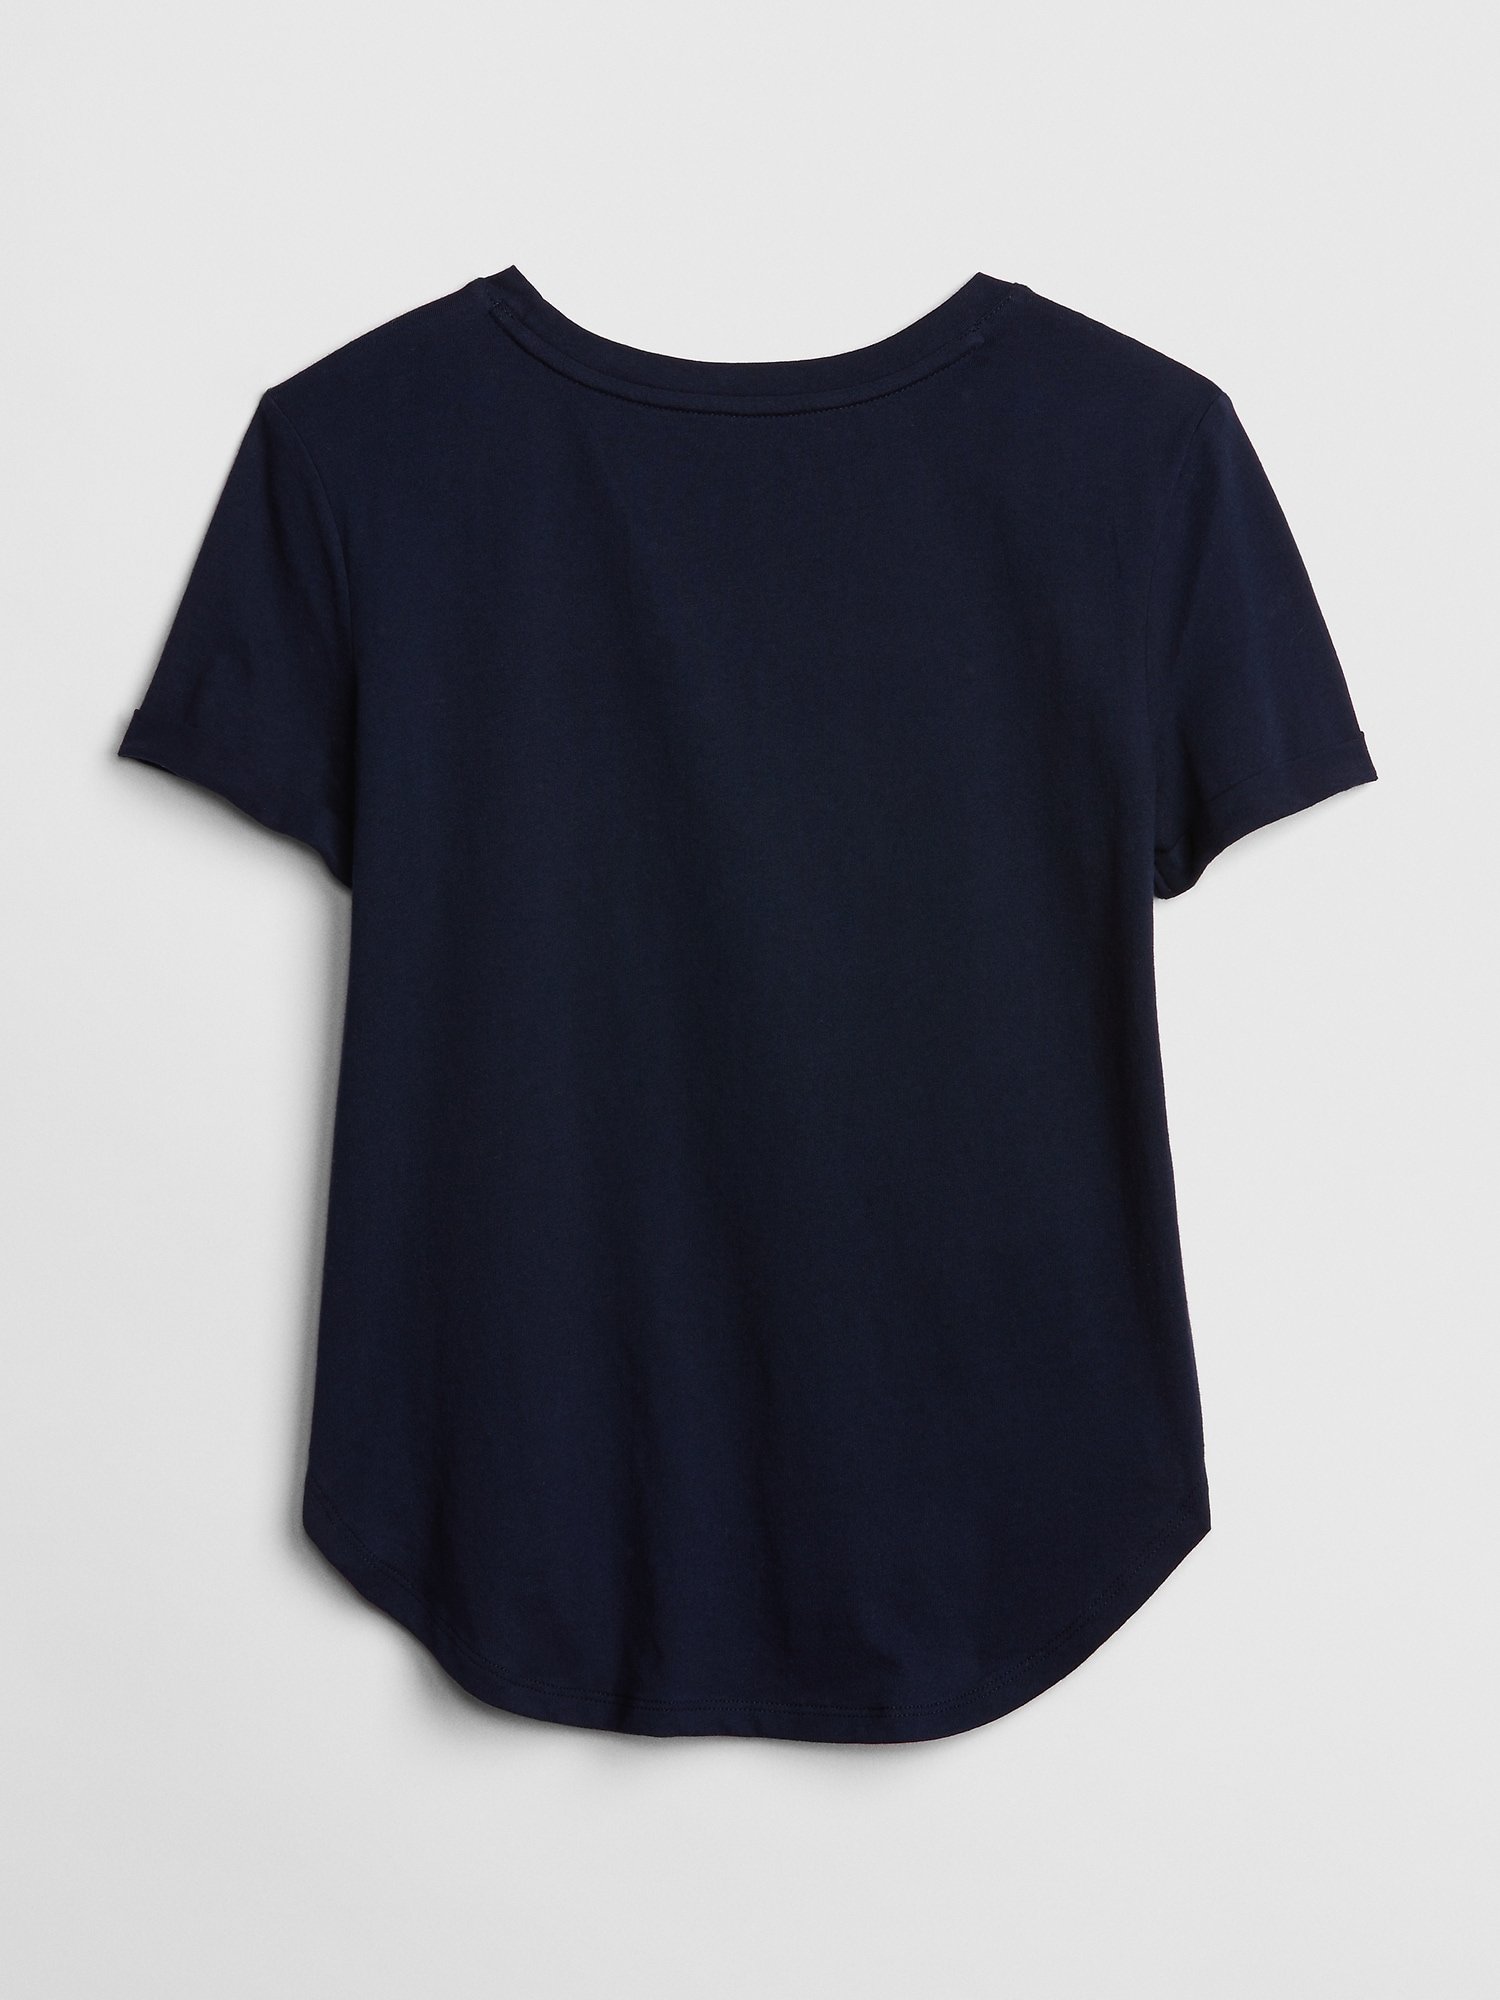 Değişen Pullu Baskılı T-Shirt product image